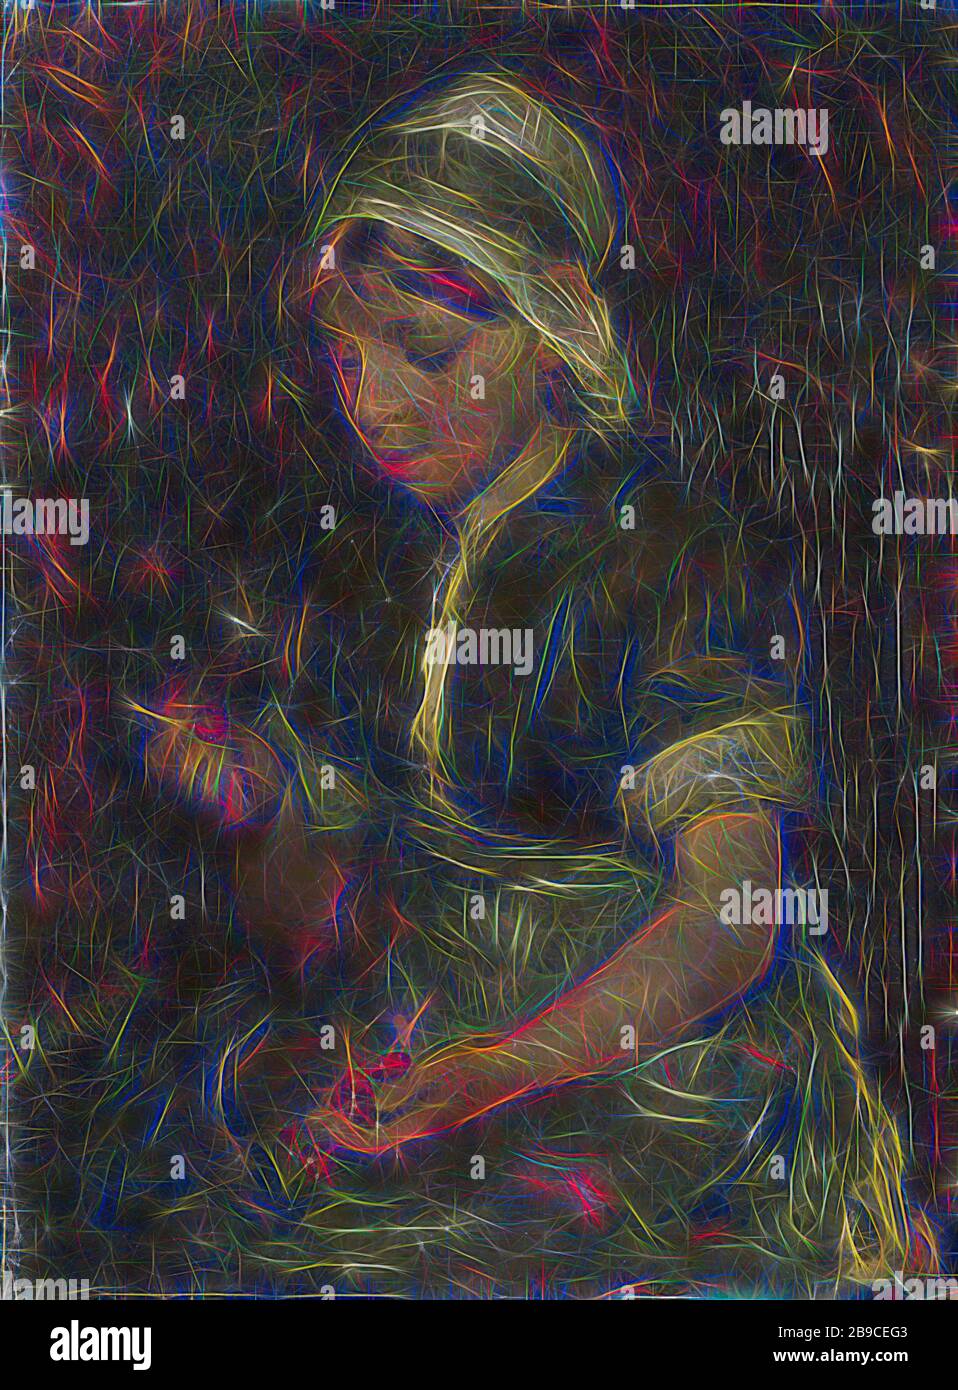 Fille avec Cherries, fille assise avec cerises entre ses mains, Bernardus Johannes Blommers, c. 1860 - c. 1914, panneau, peinture à l'huile (peinture), h 31 cm × W 22,5 cm t 4,5 cm, repensé par Gibon, design de glanissement chaleureux et gai de la luminosité et des rayons de lumière radiance. L'art classique réinventé avec une touche moderne. La photographie inspirée du futurisme, qui embrasse l'énergie dynamique de la technologie moderne, du mouvement, de la vitesse et révolutionne la culture. Banque D'Images